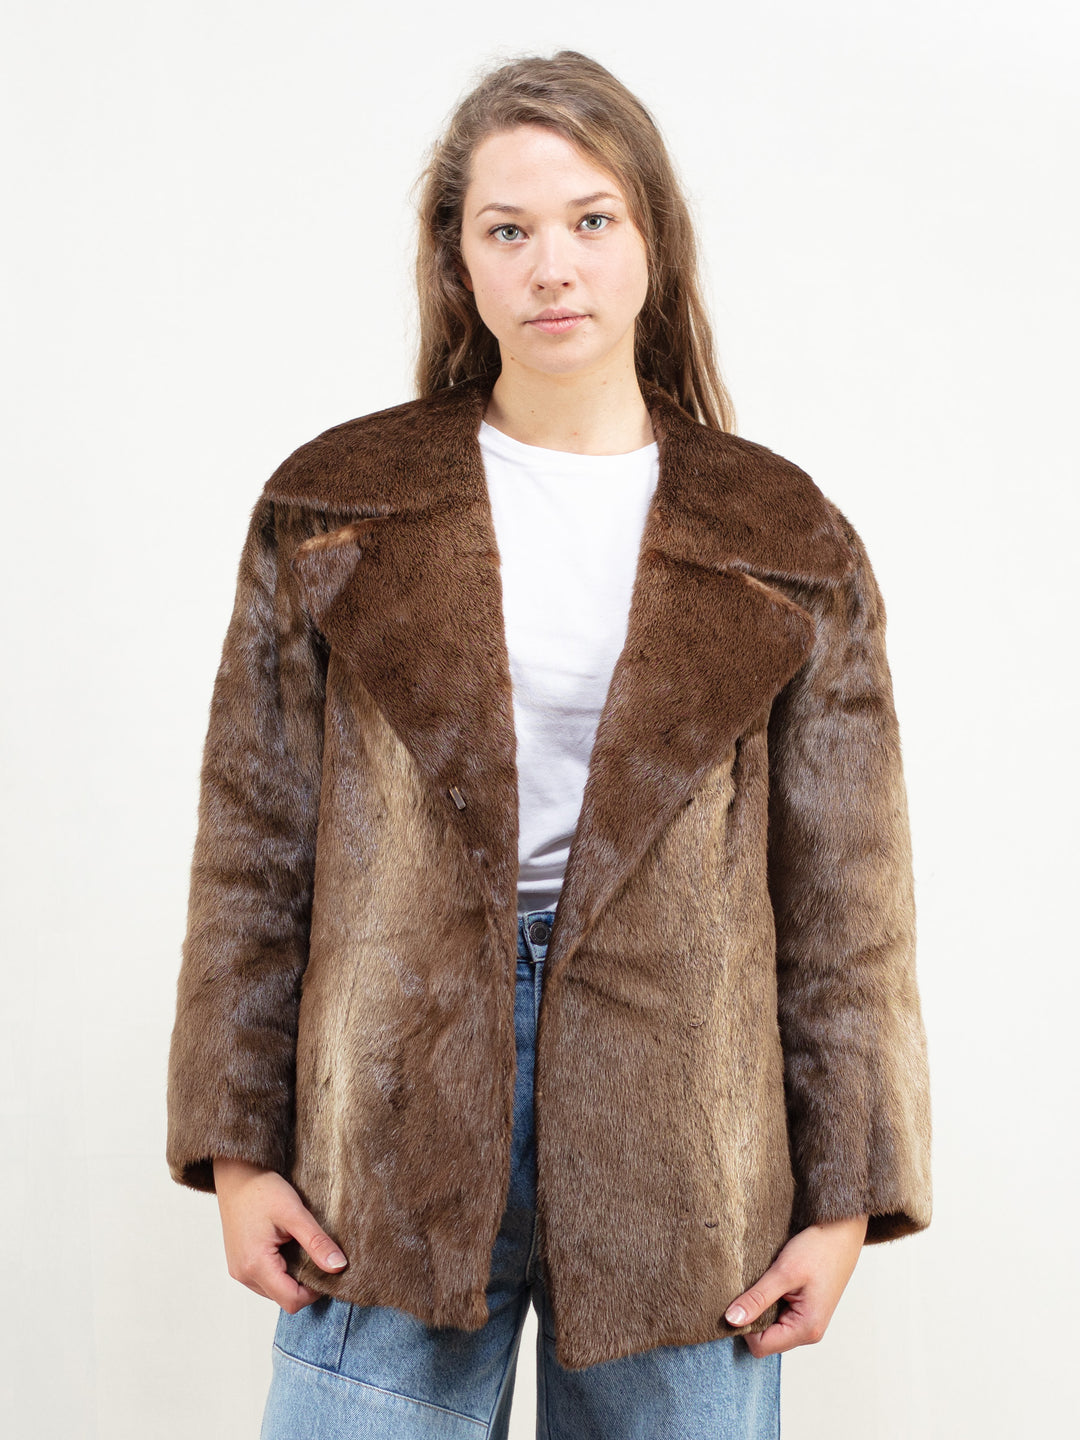 70s Fur Jacket brown real fur coat women luxurious outerwear vintage fur jacket women winter opera jacket fancy fur jacket size large